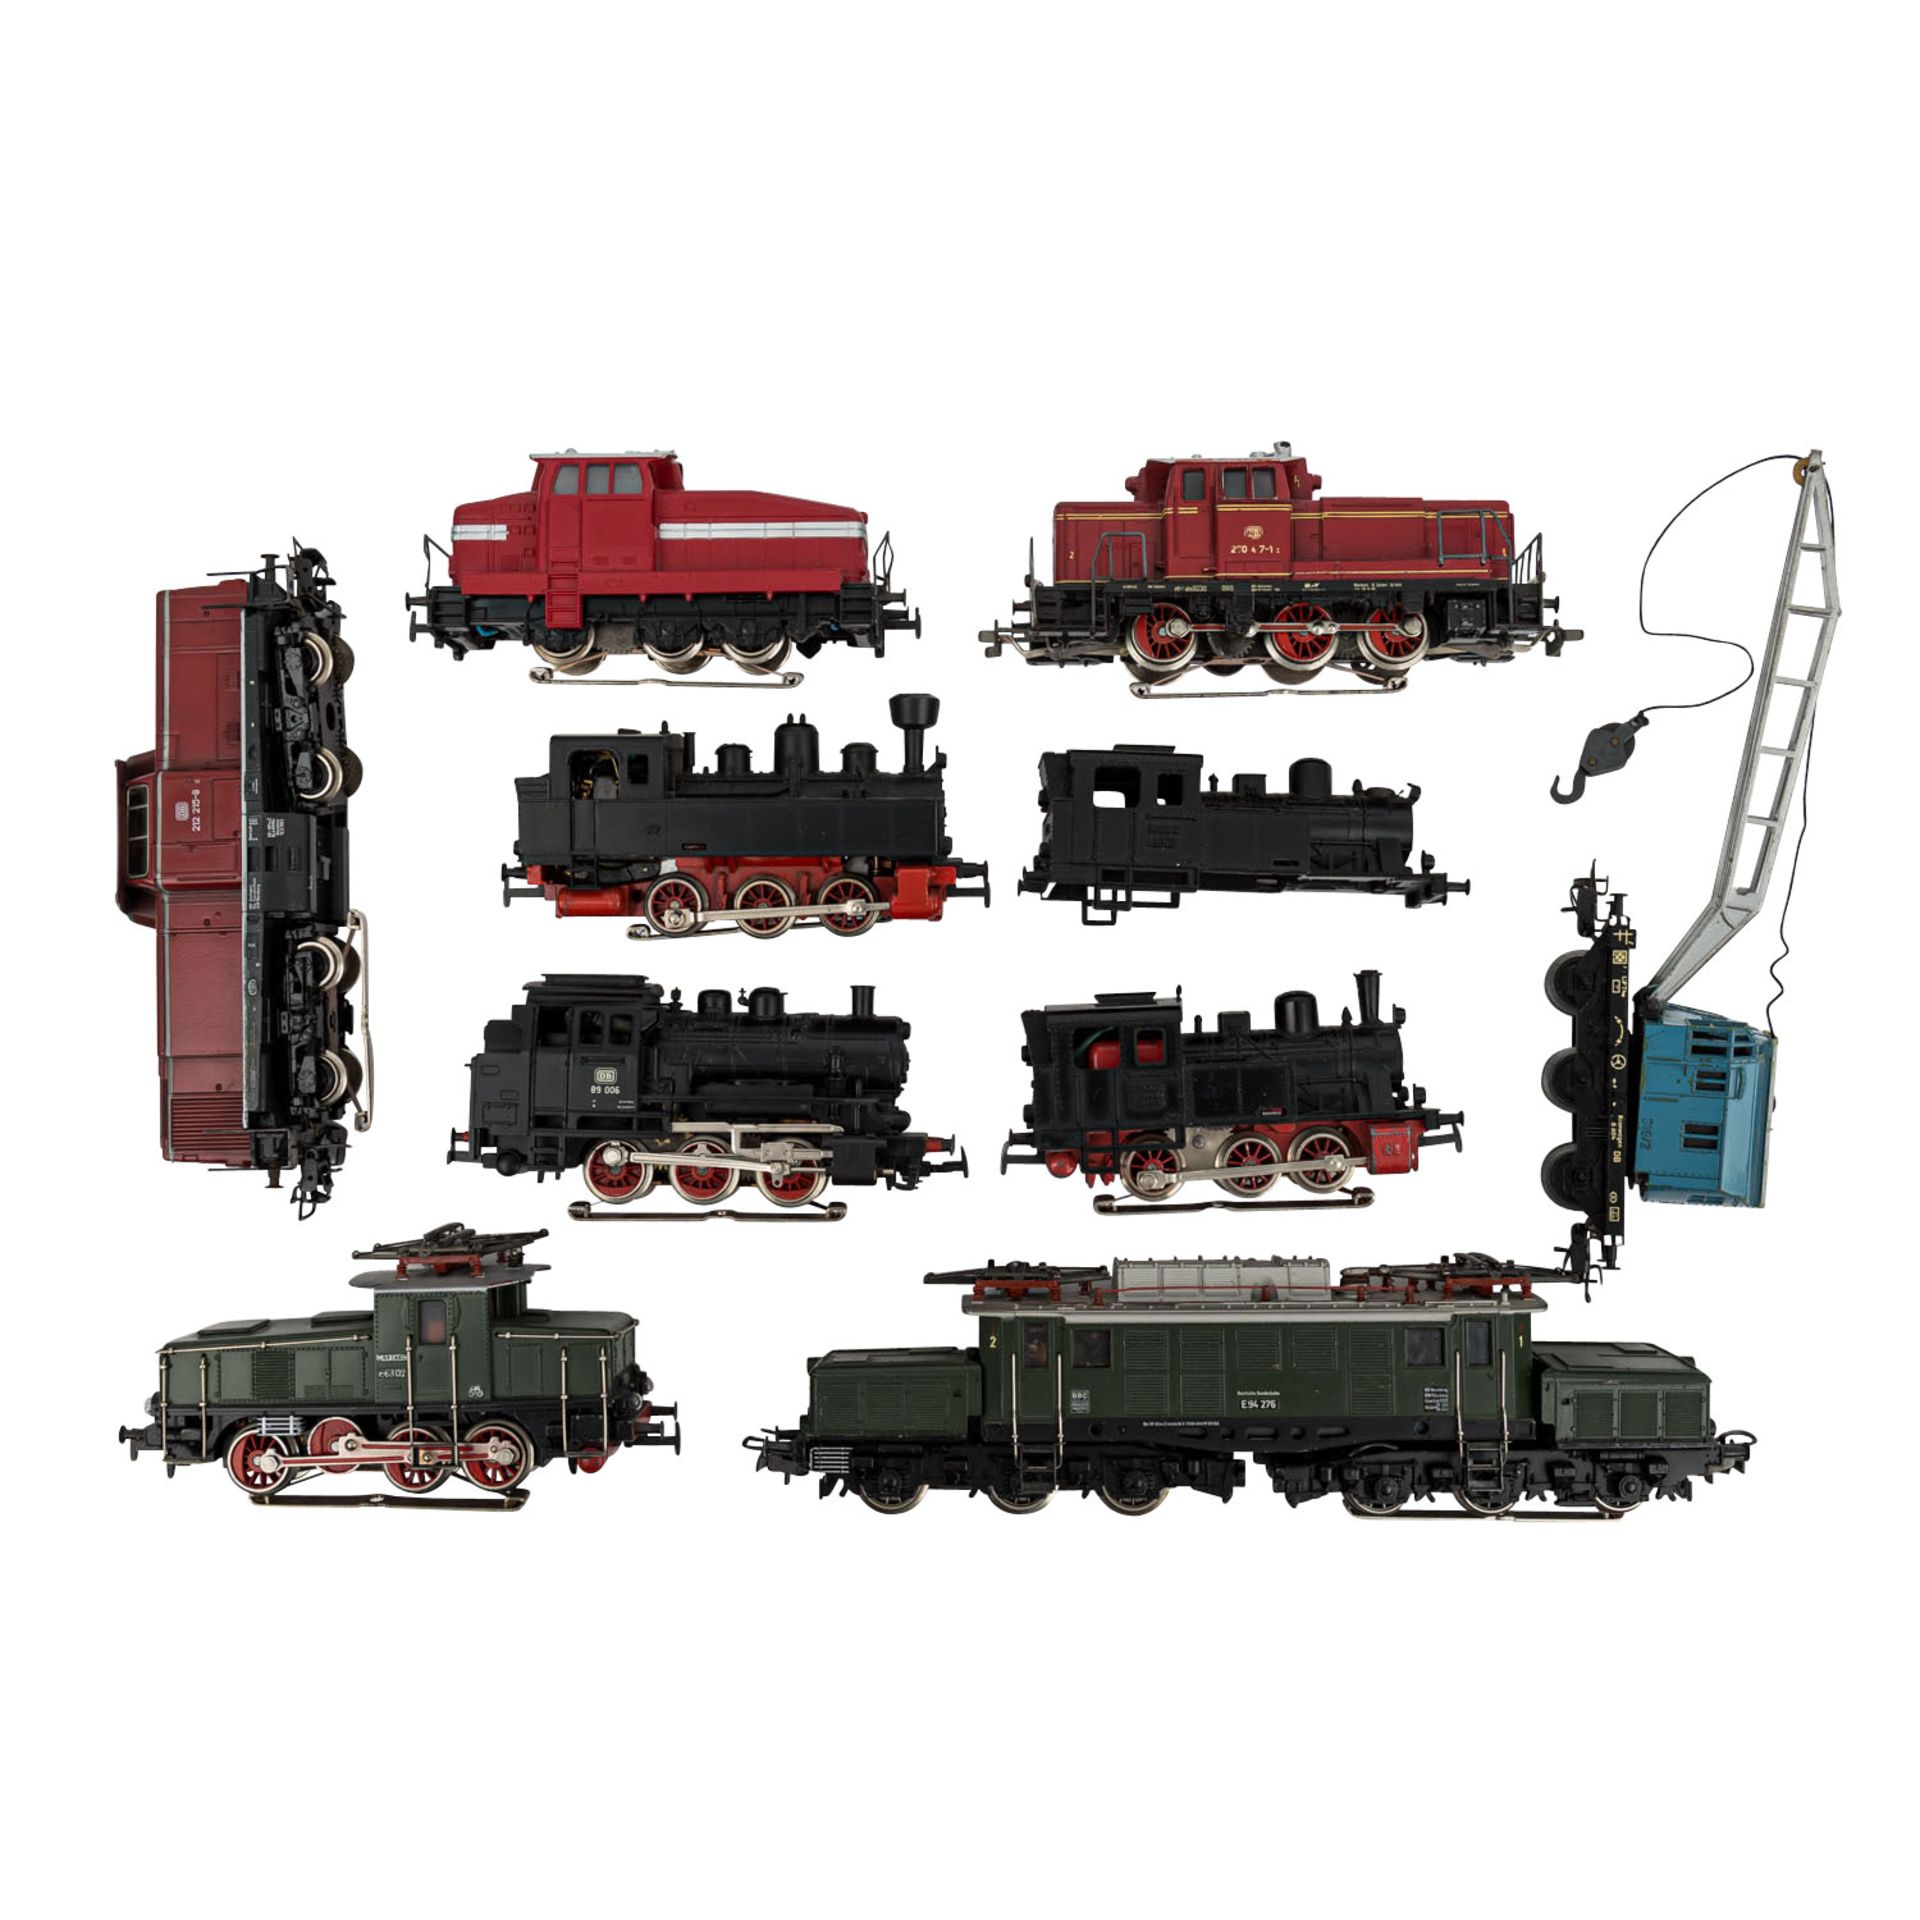 MÄRKLIN umfangreiches Konvolut Lokomotiven und Güterwagen, Spur H 0,bestehend aus zwei E-Loks 3022 - Bild 4 aus 5